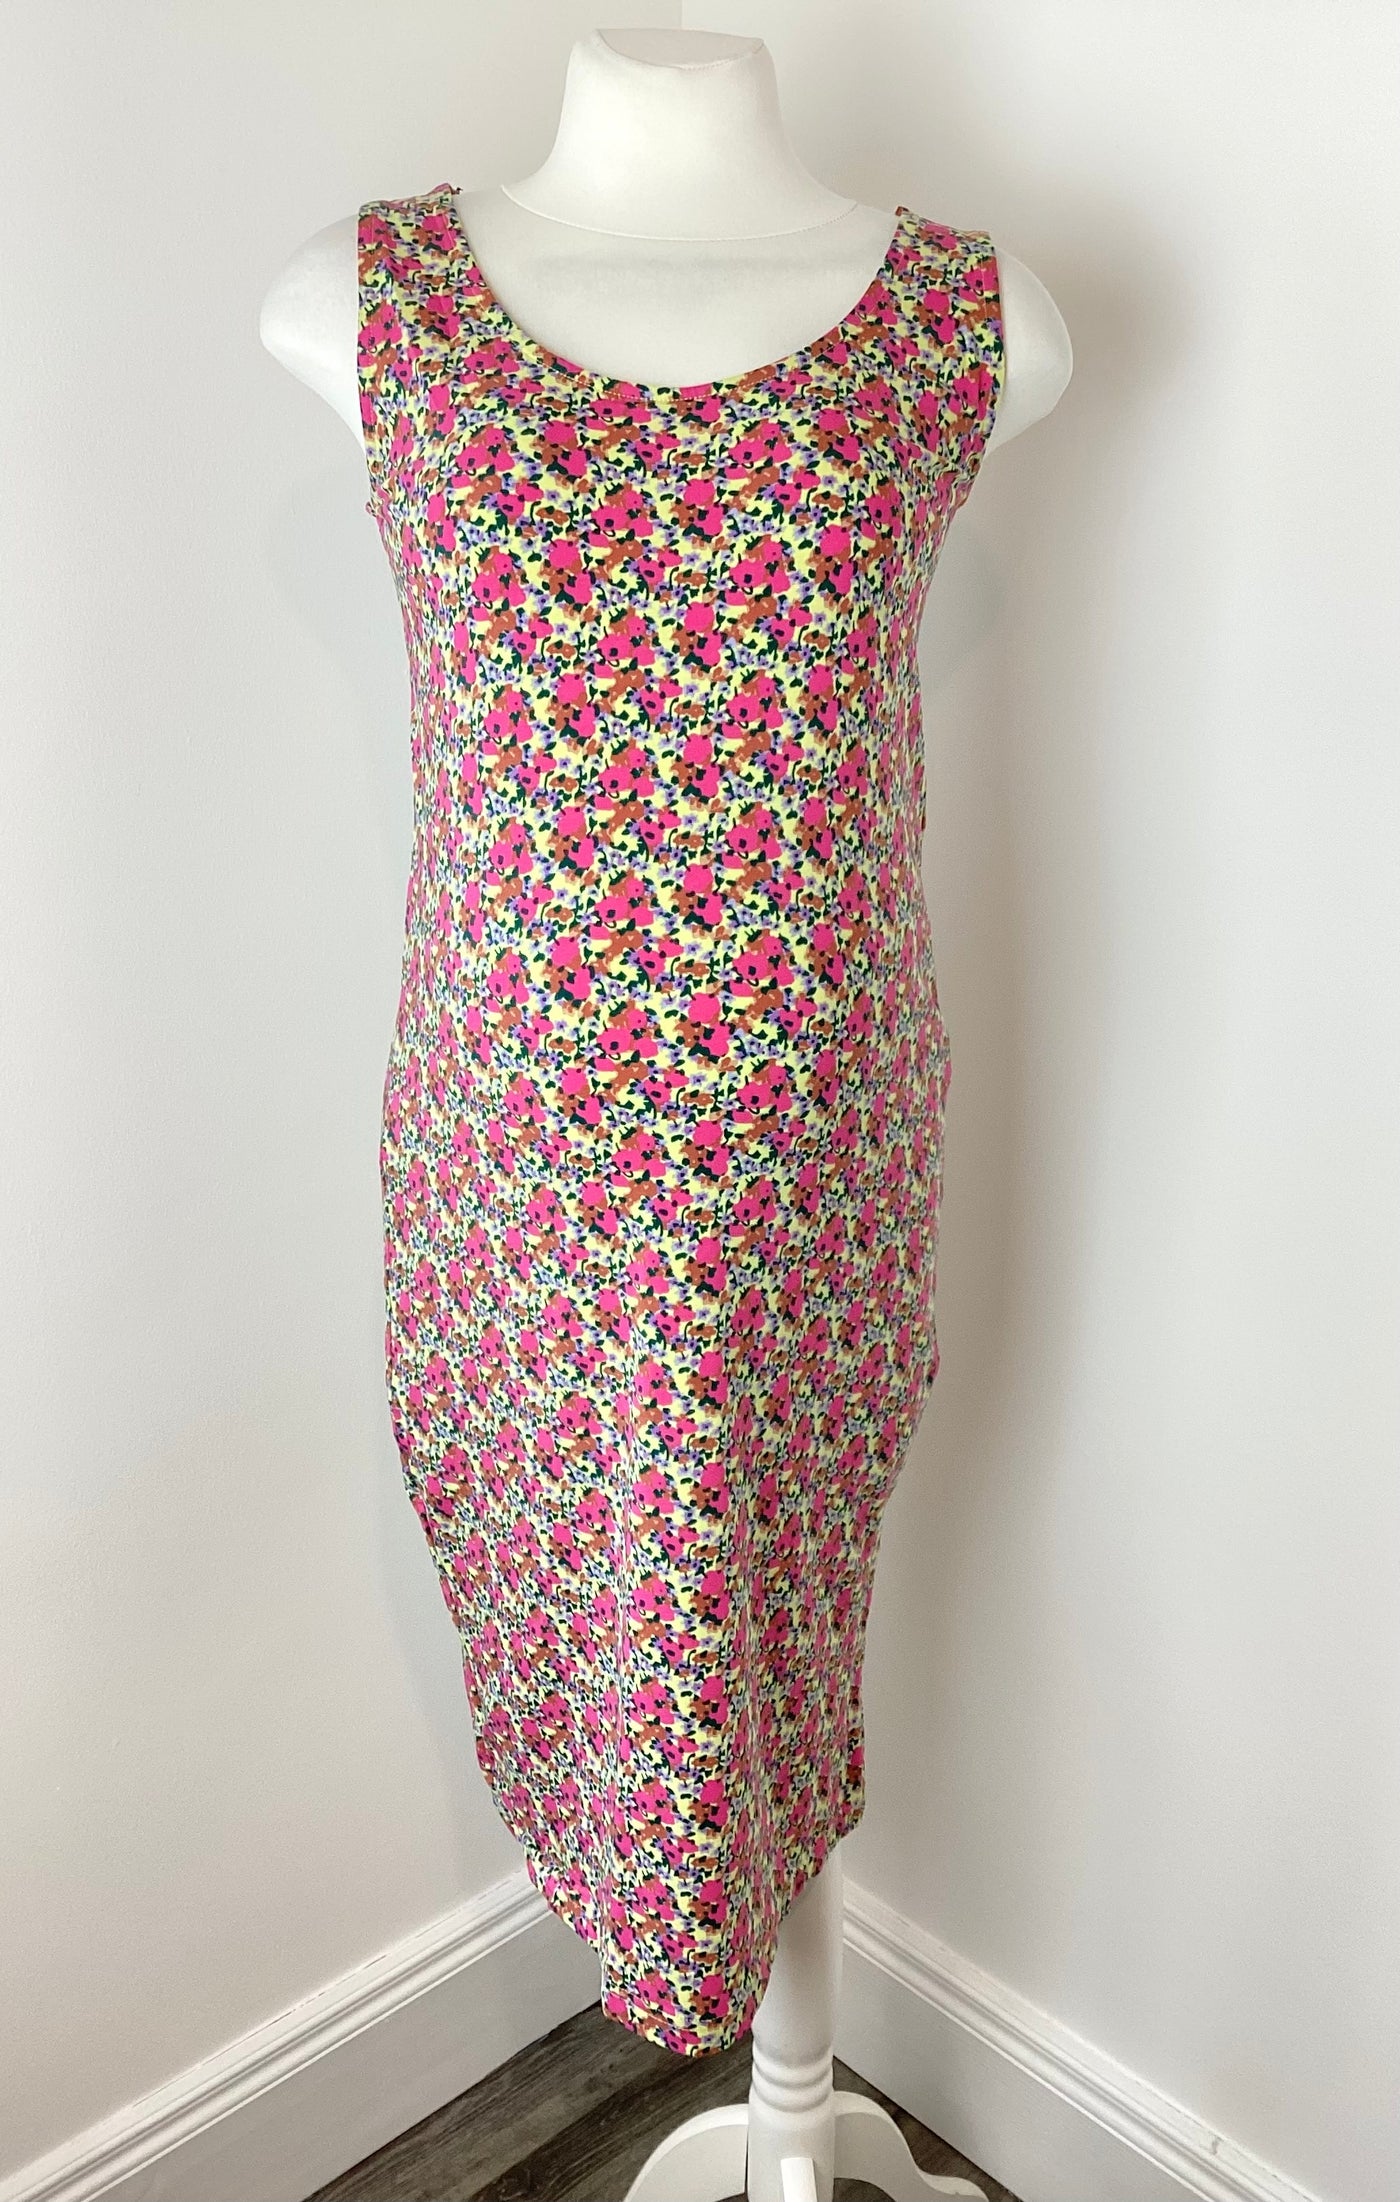 Mamalicious pink, yellow & purple floral sleeveless dress (BNWT) - Size L (Approx UK 12)